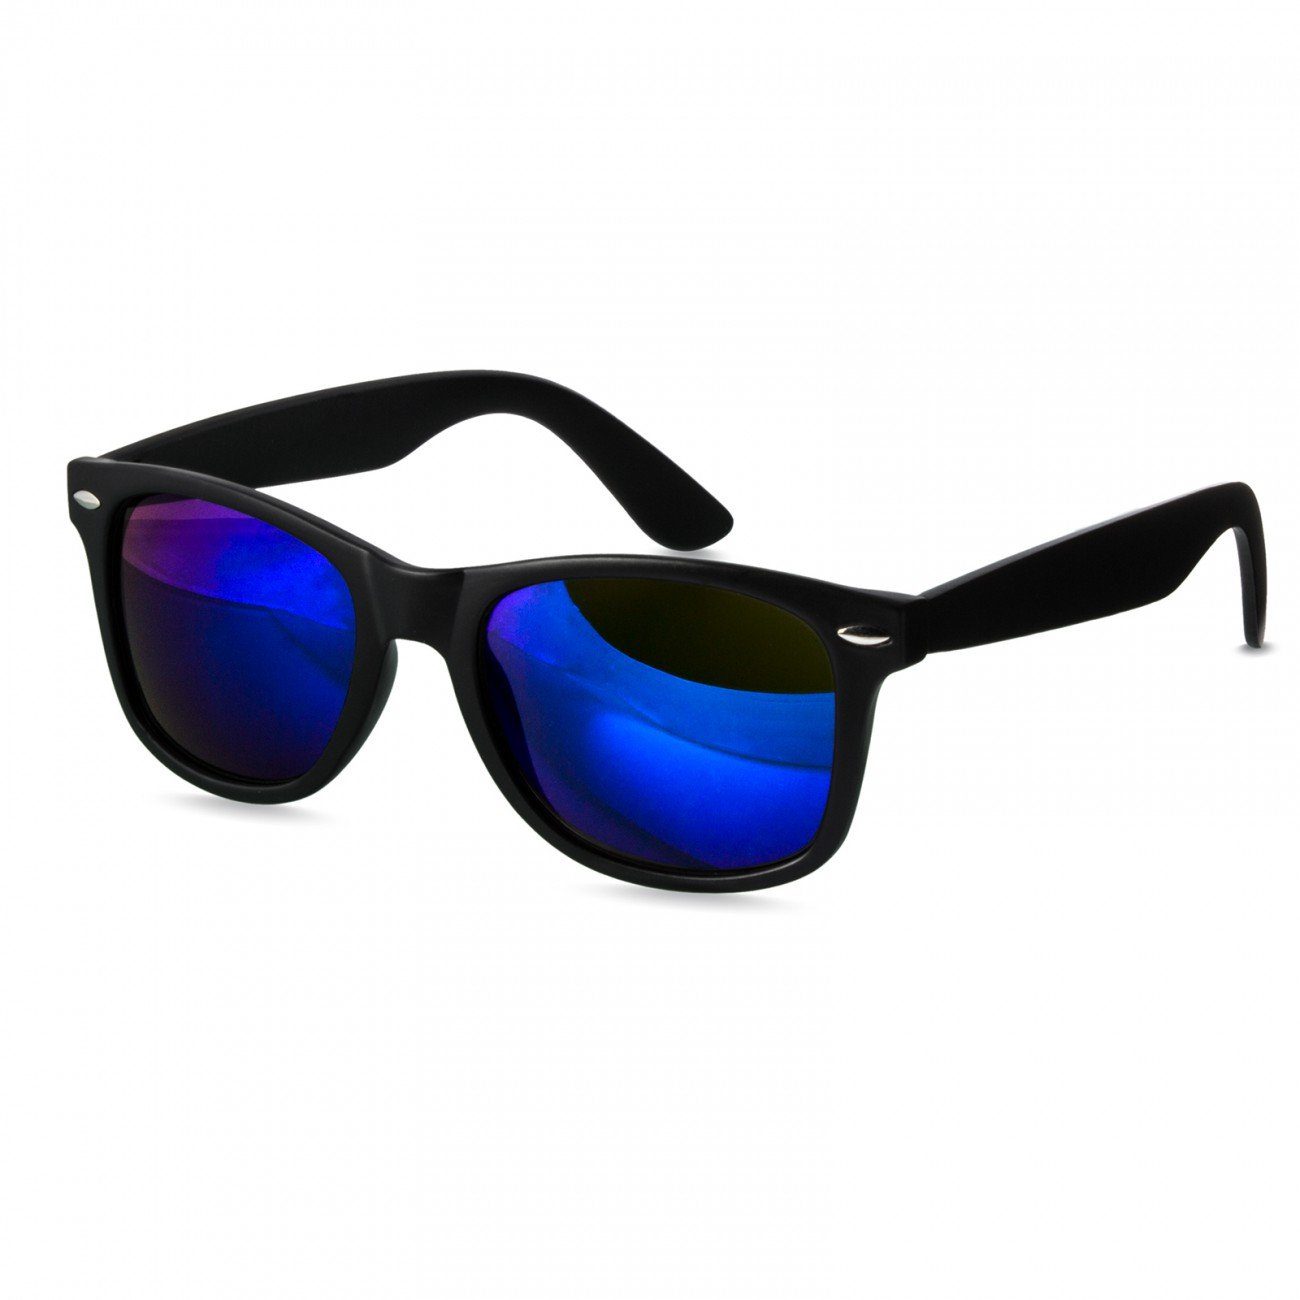 Caspar Sonnenbrille SG017 Damen RETRO Designbrille kpl. matt schwarz / blau verspiegelt | Sonnenbrillen